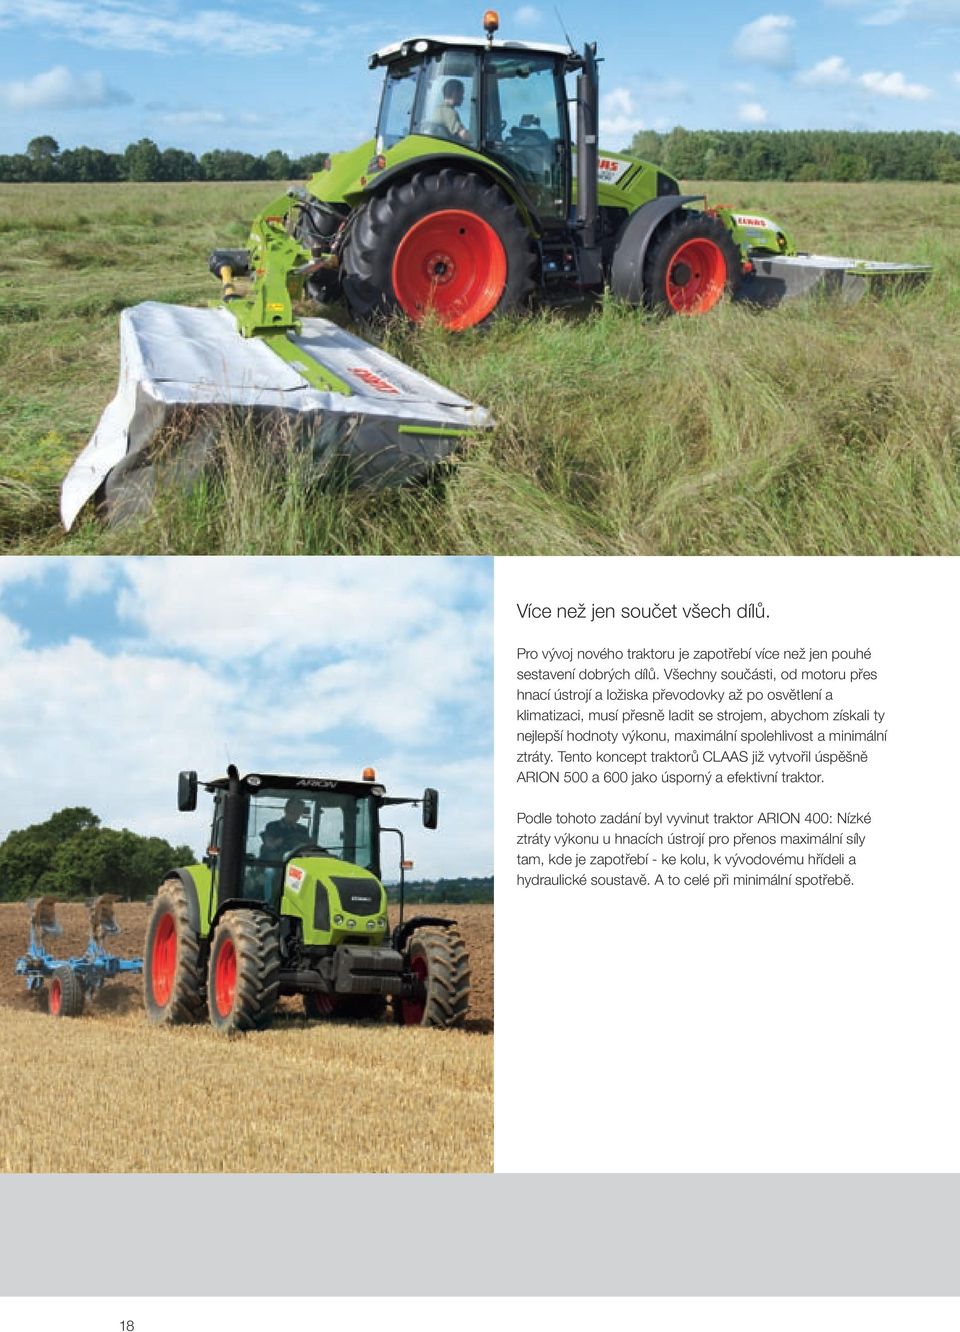 výkonu, maximální spolehlivost a minimální ztráty. Tento koncept traktorů CLAAS již vytvořil úspěšně ARION 500 a 600 jako úsporný a efektivní traktor.